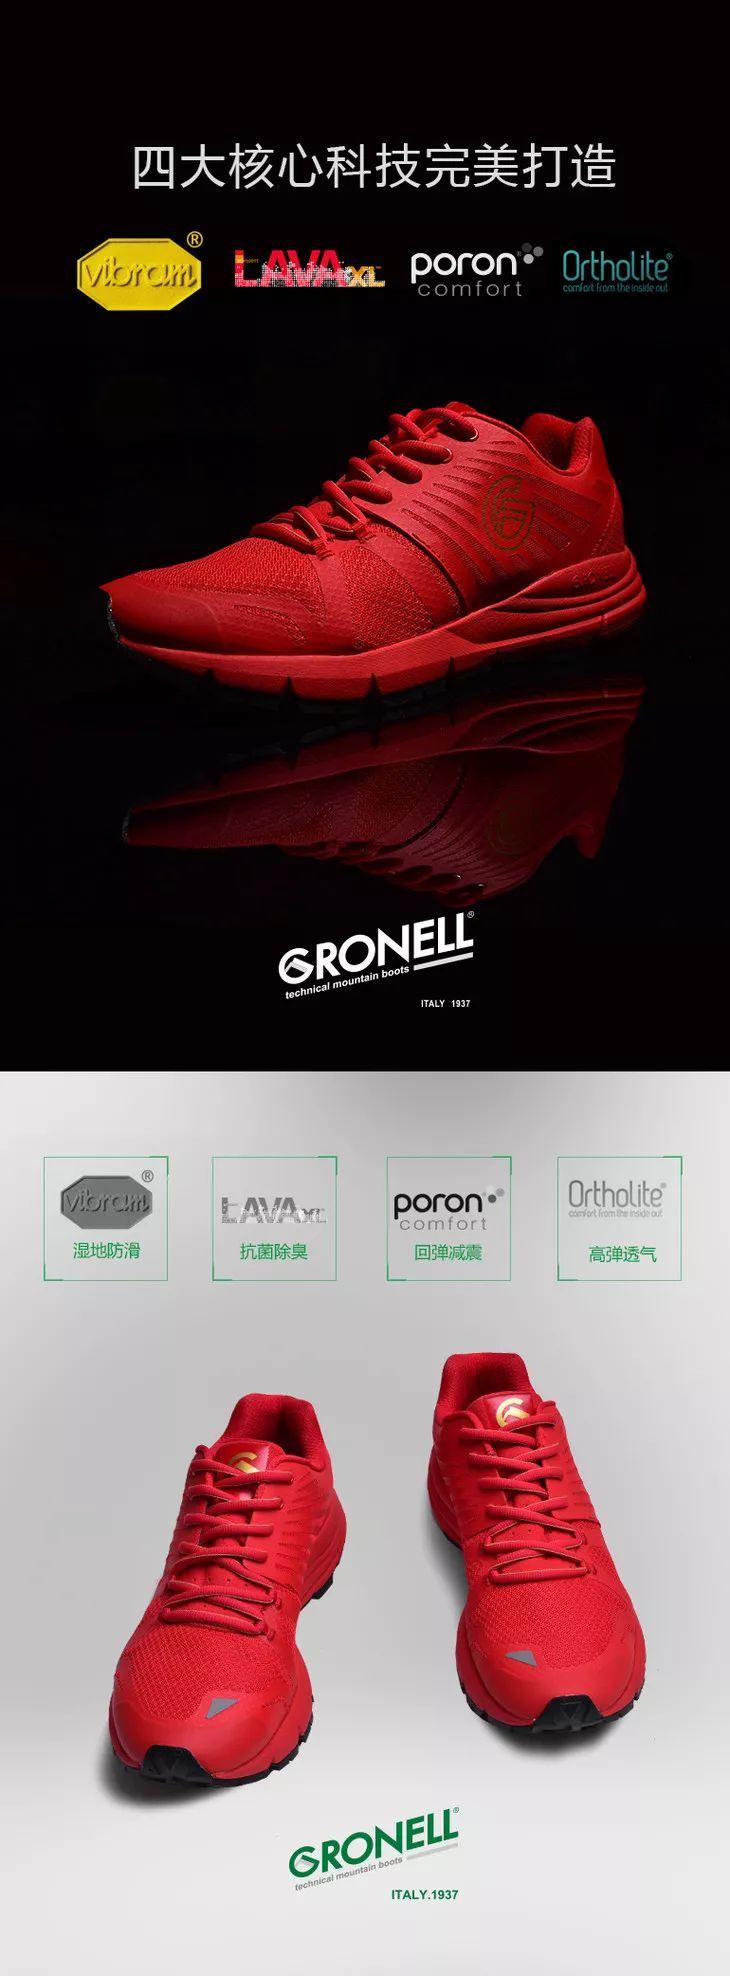 意大利越野小红鞋来了！3.8折特惠限量发售！